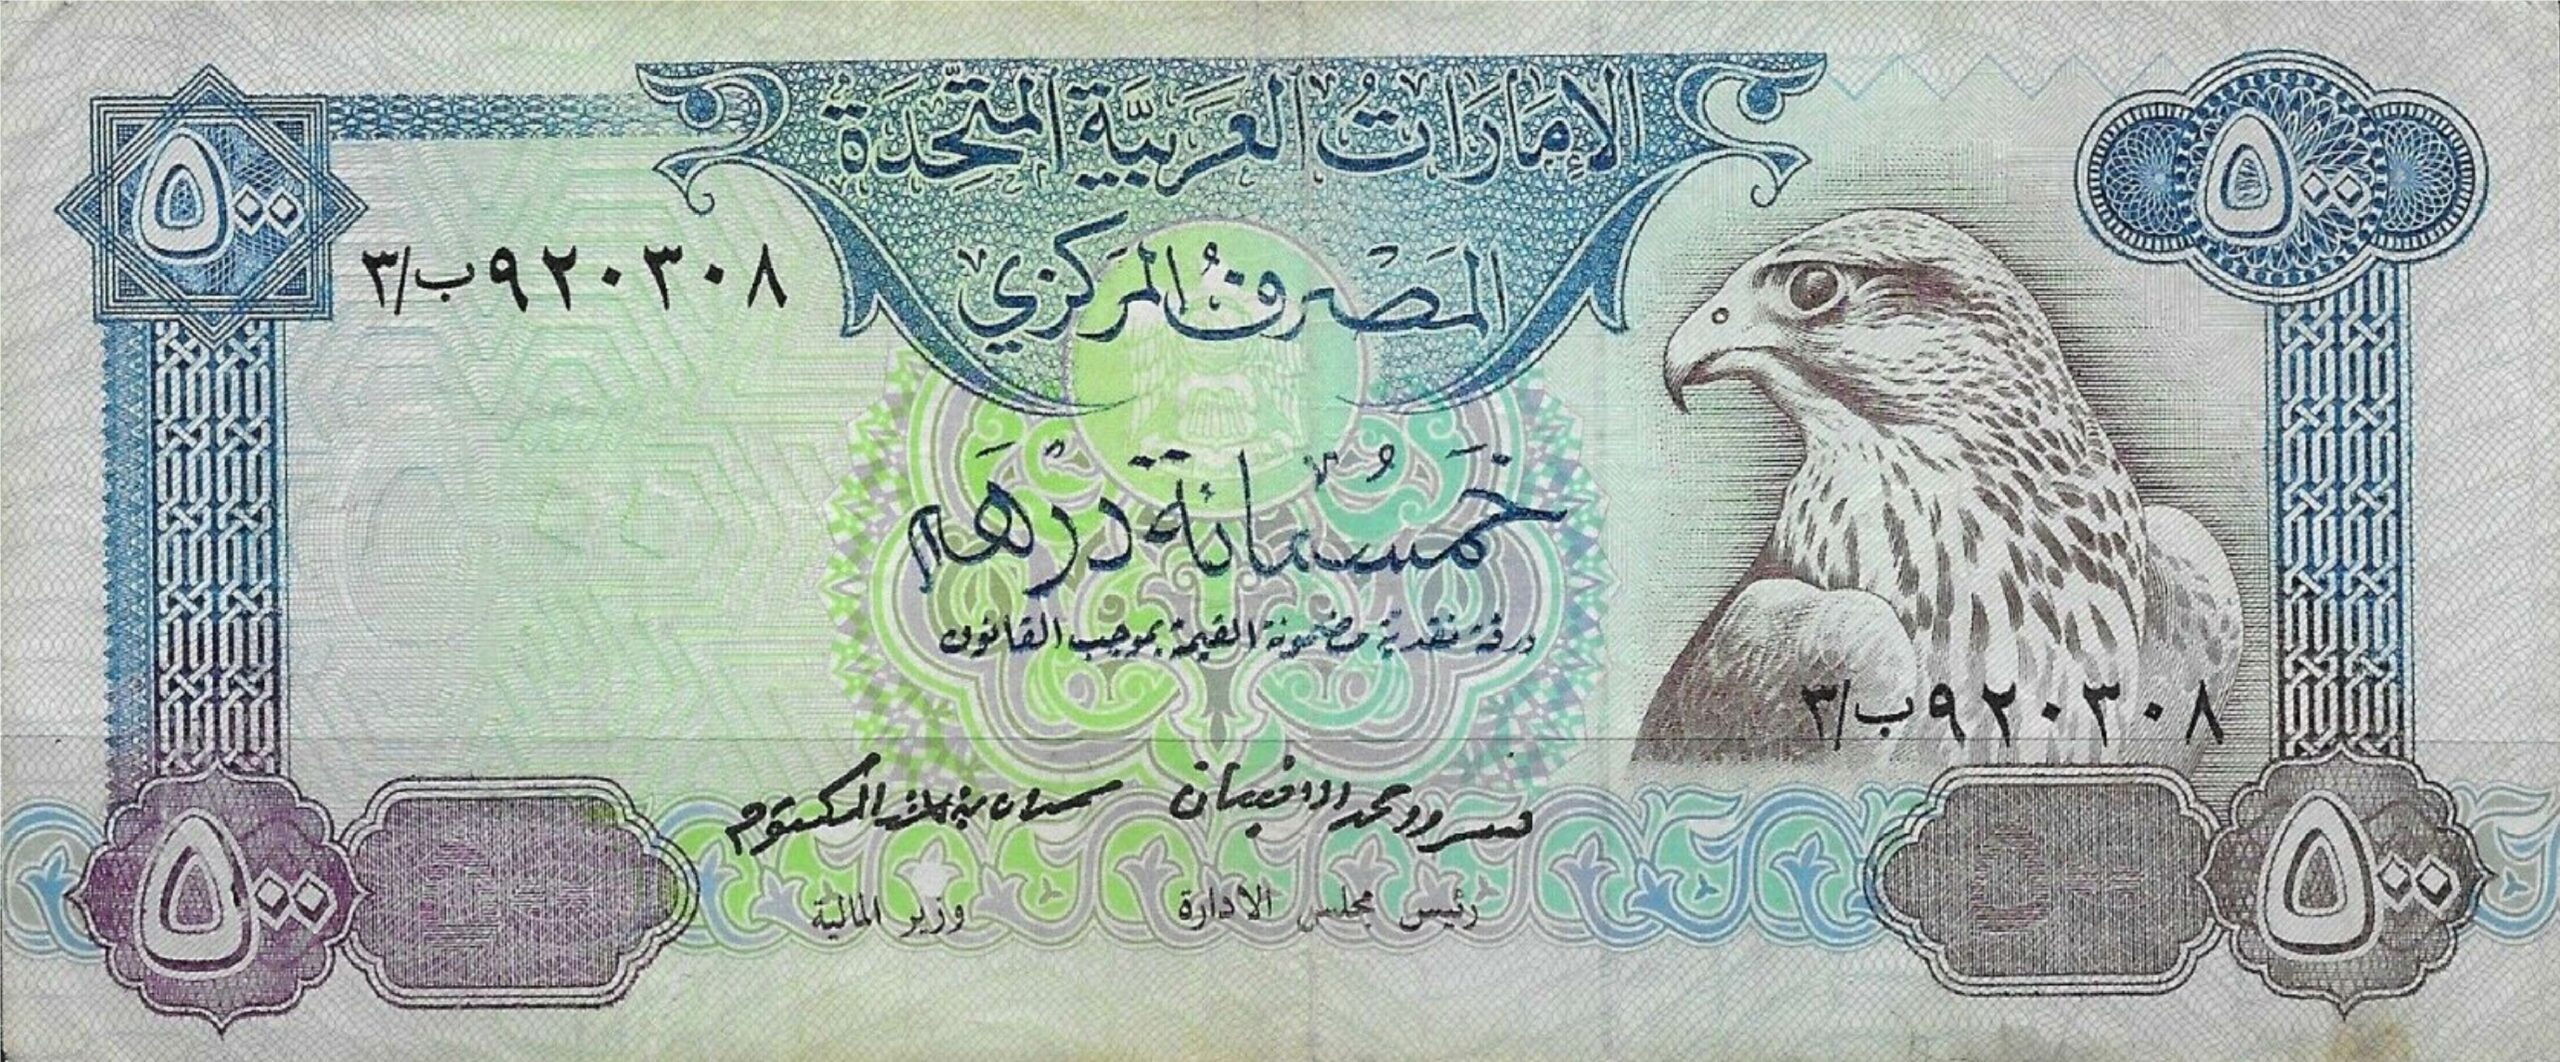 500 UAE Dirhams banknote (no date)